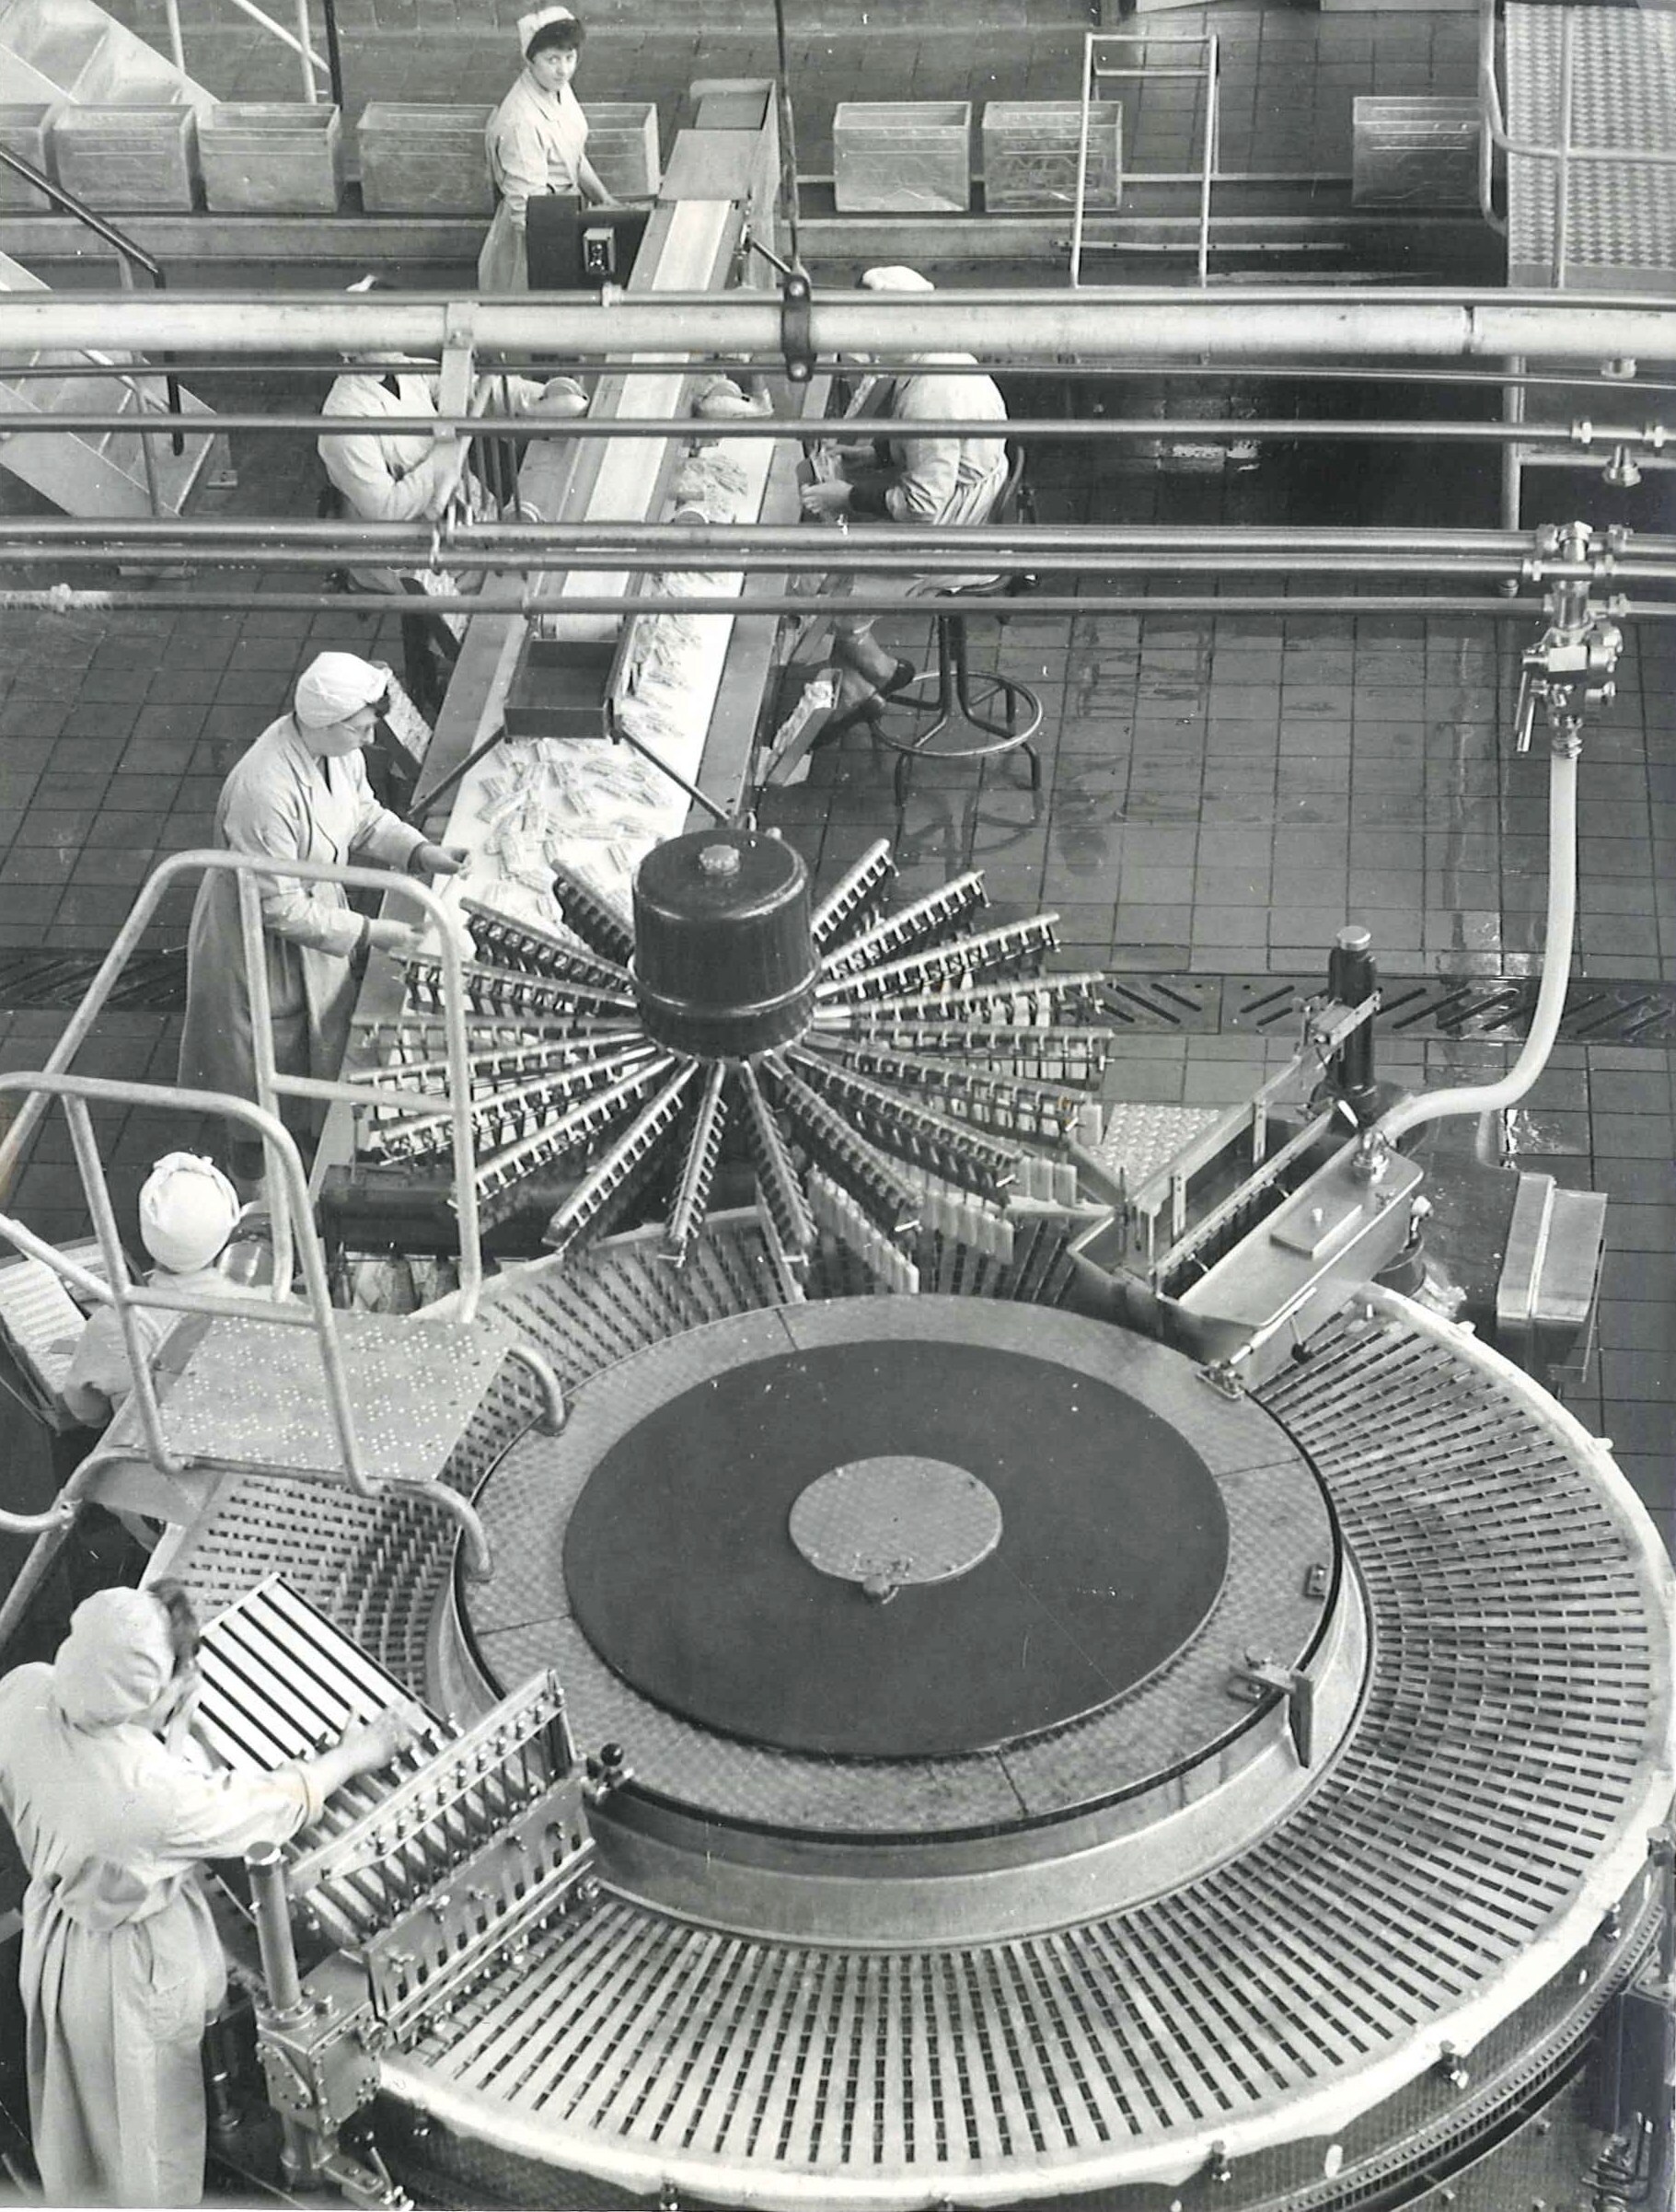 Παλιά ασπρόμαυρη εικόνα μιας μηχανής εργοστασίου παγωτού